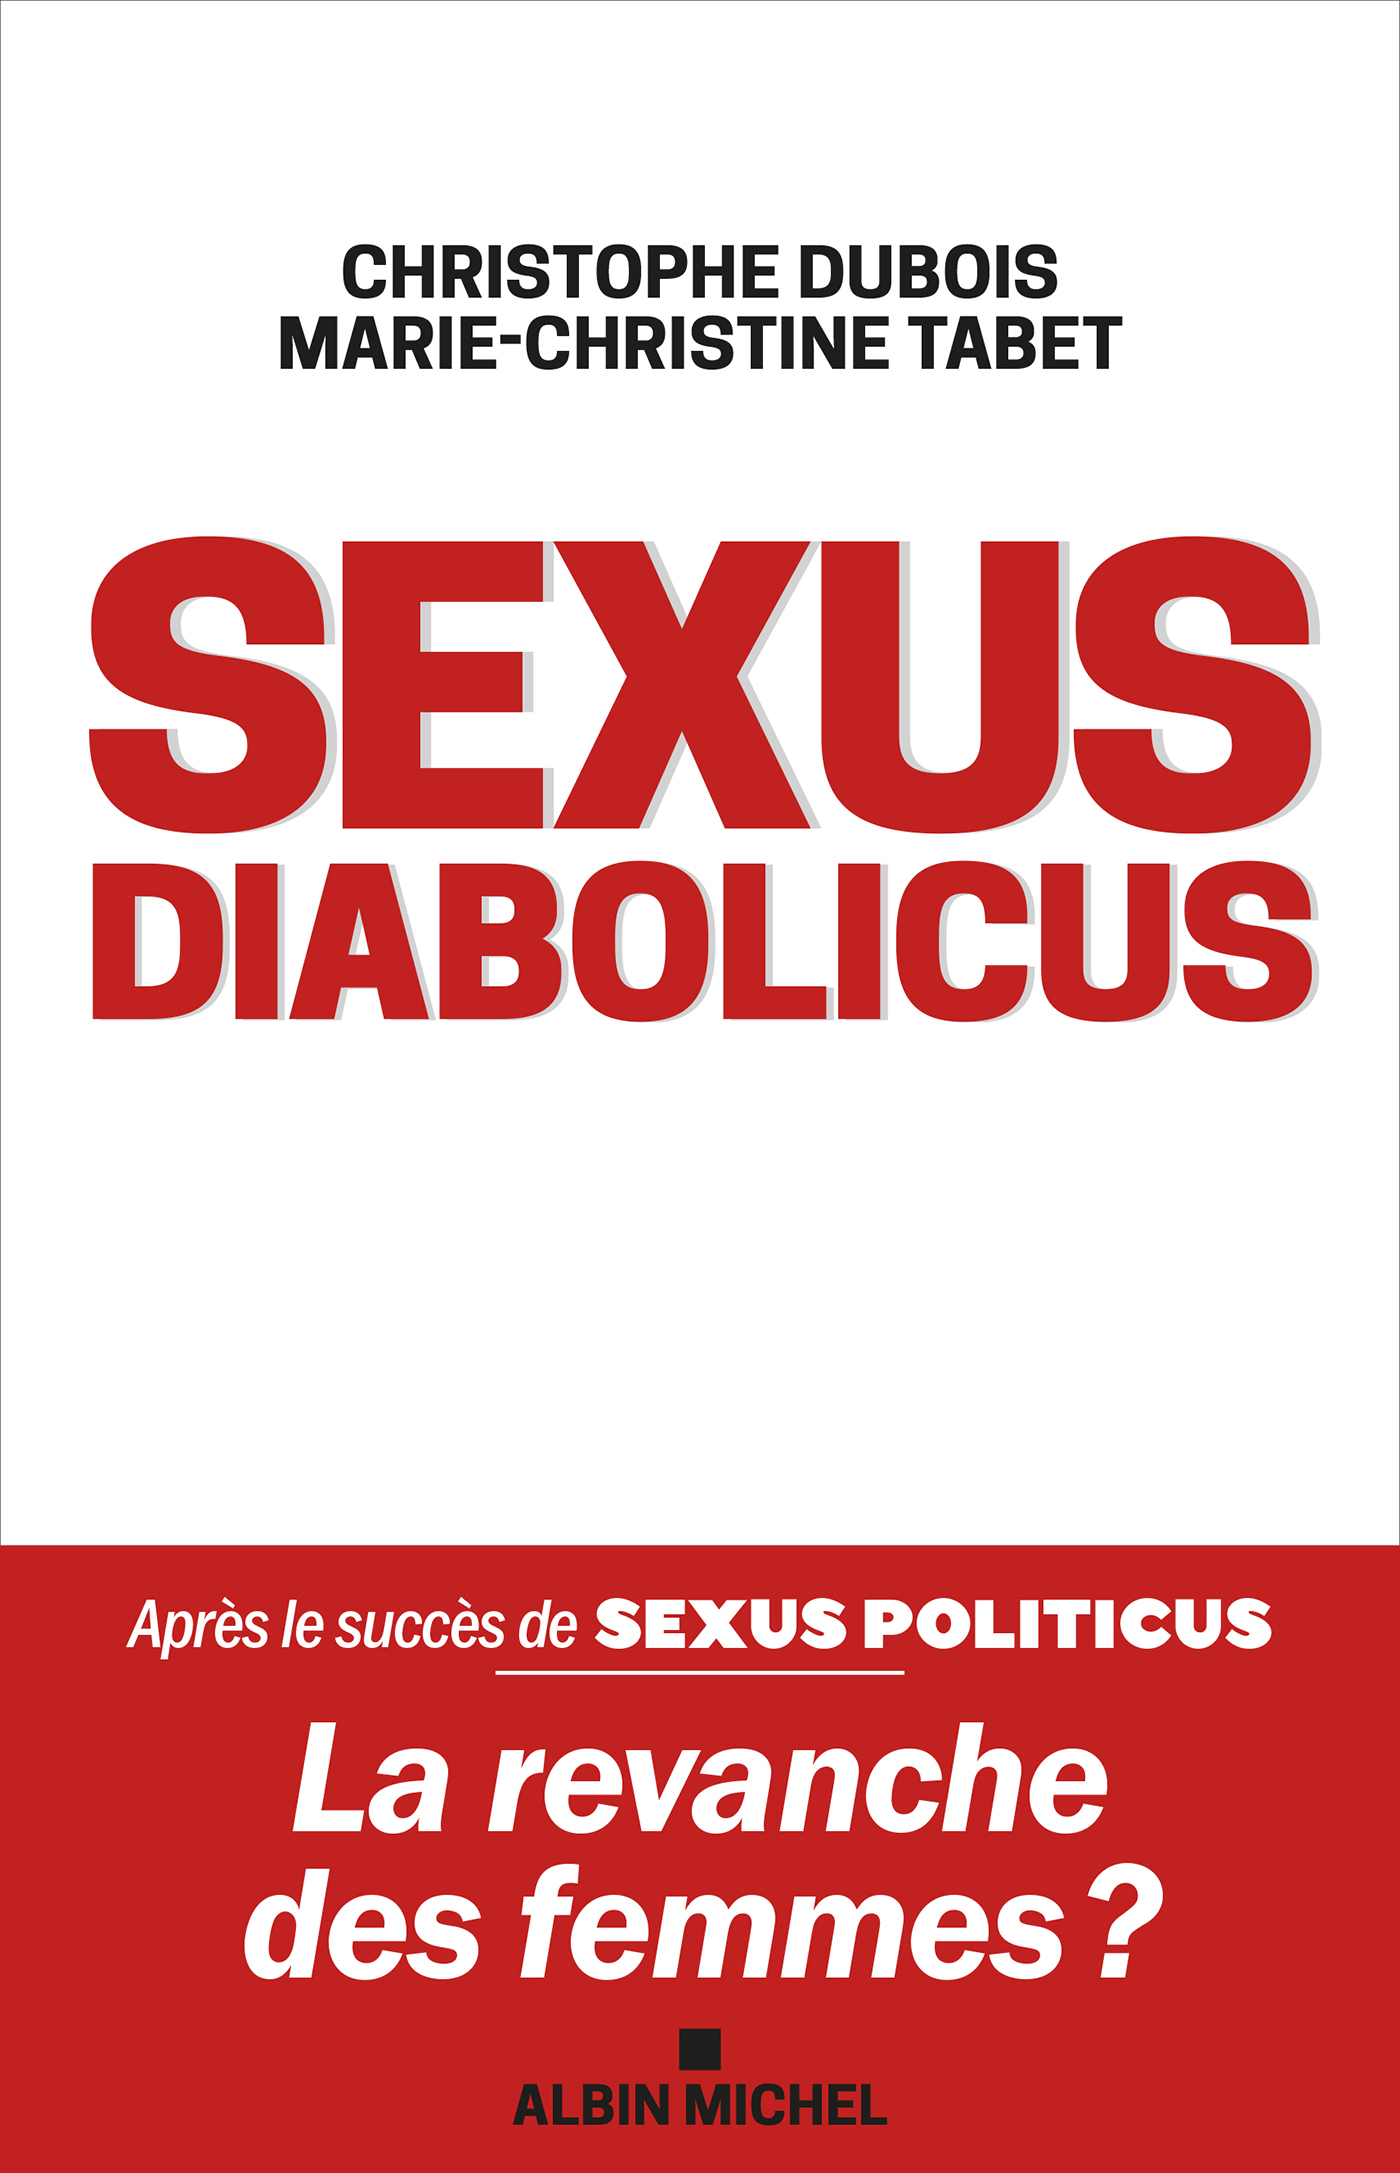 Couverture du livre Sexus diabolicus